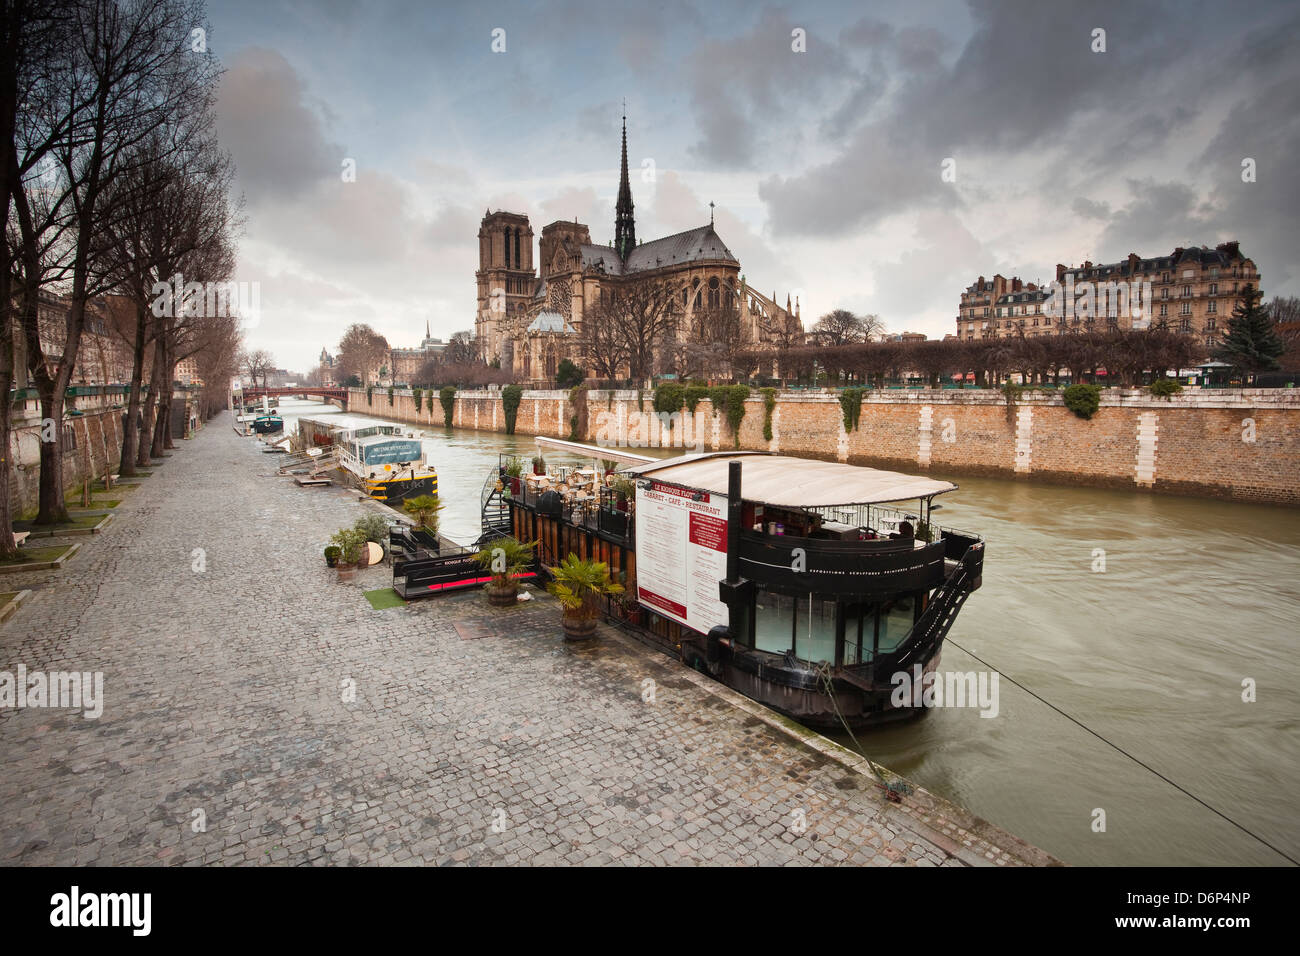 La cathédrale Notre Dame de Paris et de la Seine, Paris, France, Europe Banque D'Images